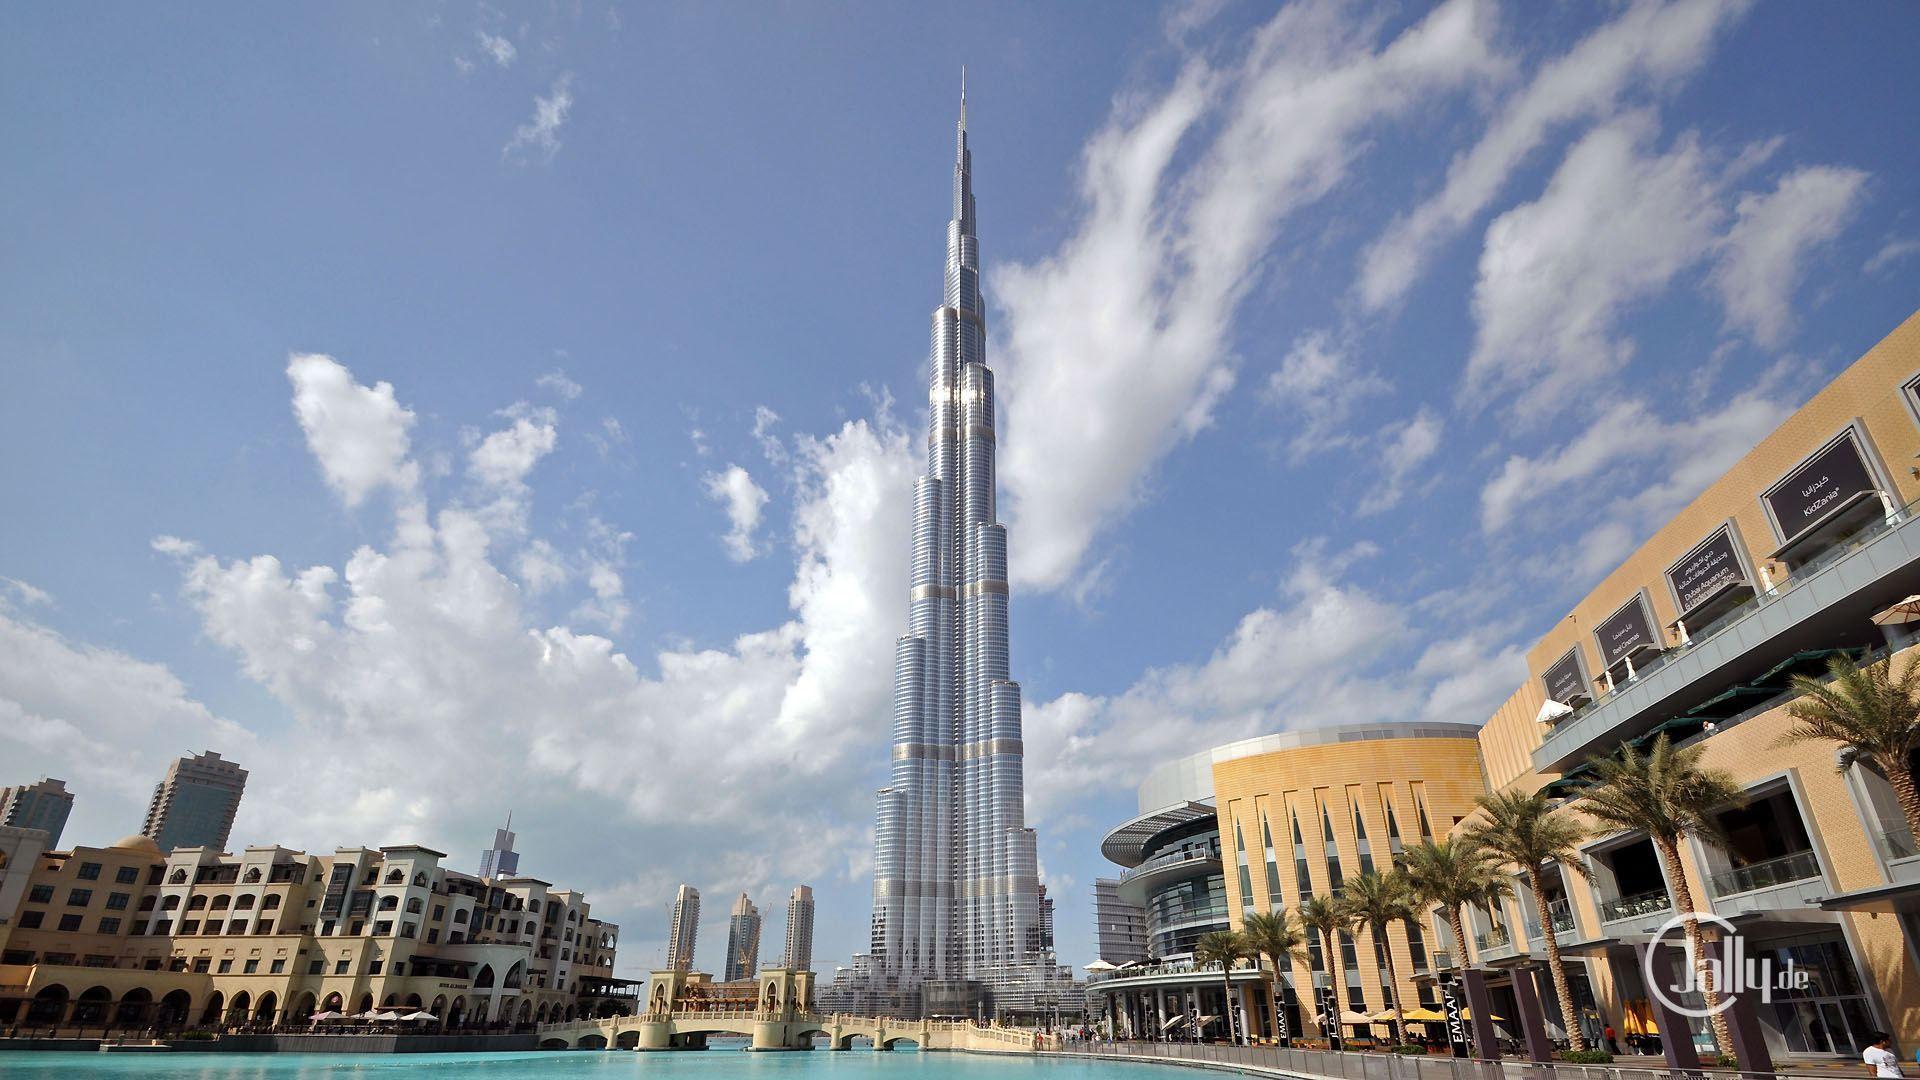 Burj Khalifa Ticket and Tour